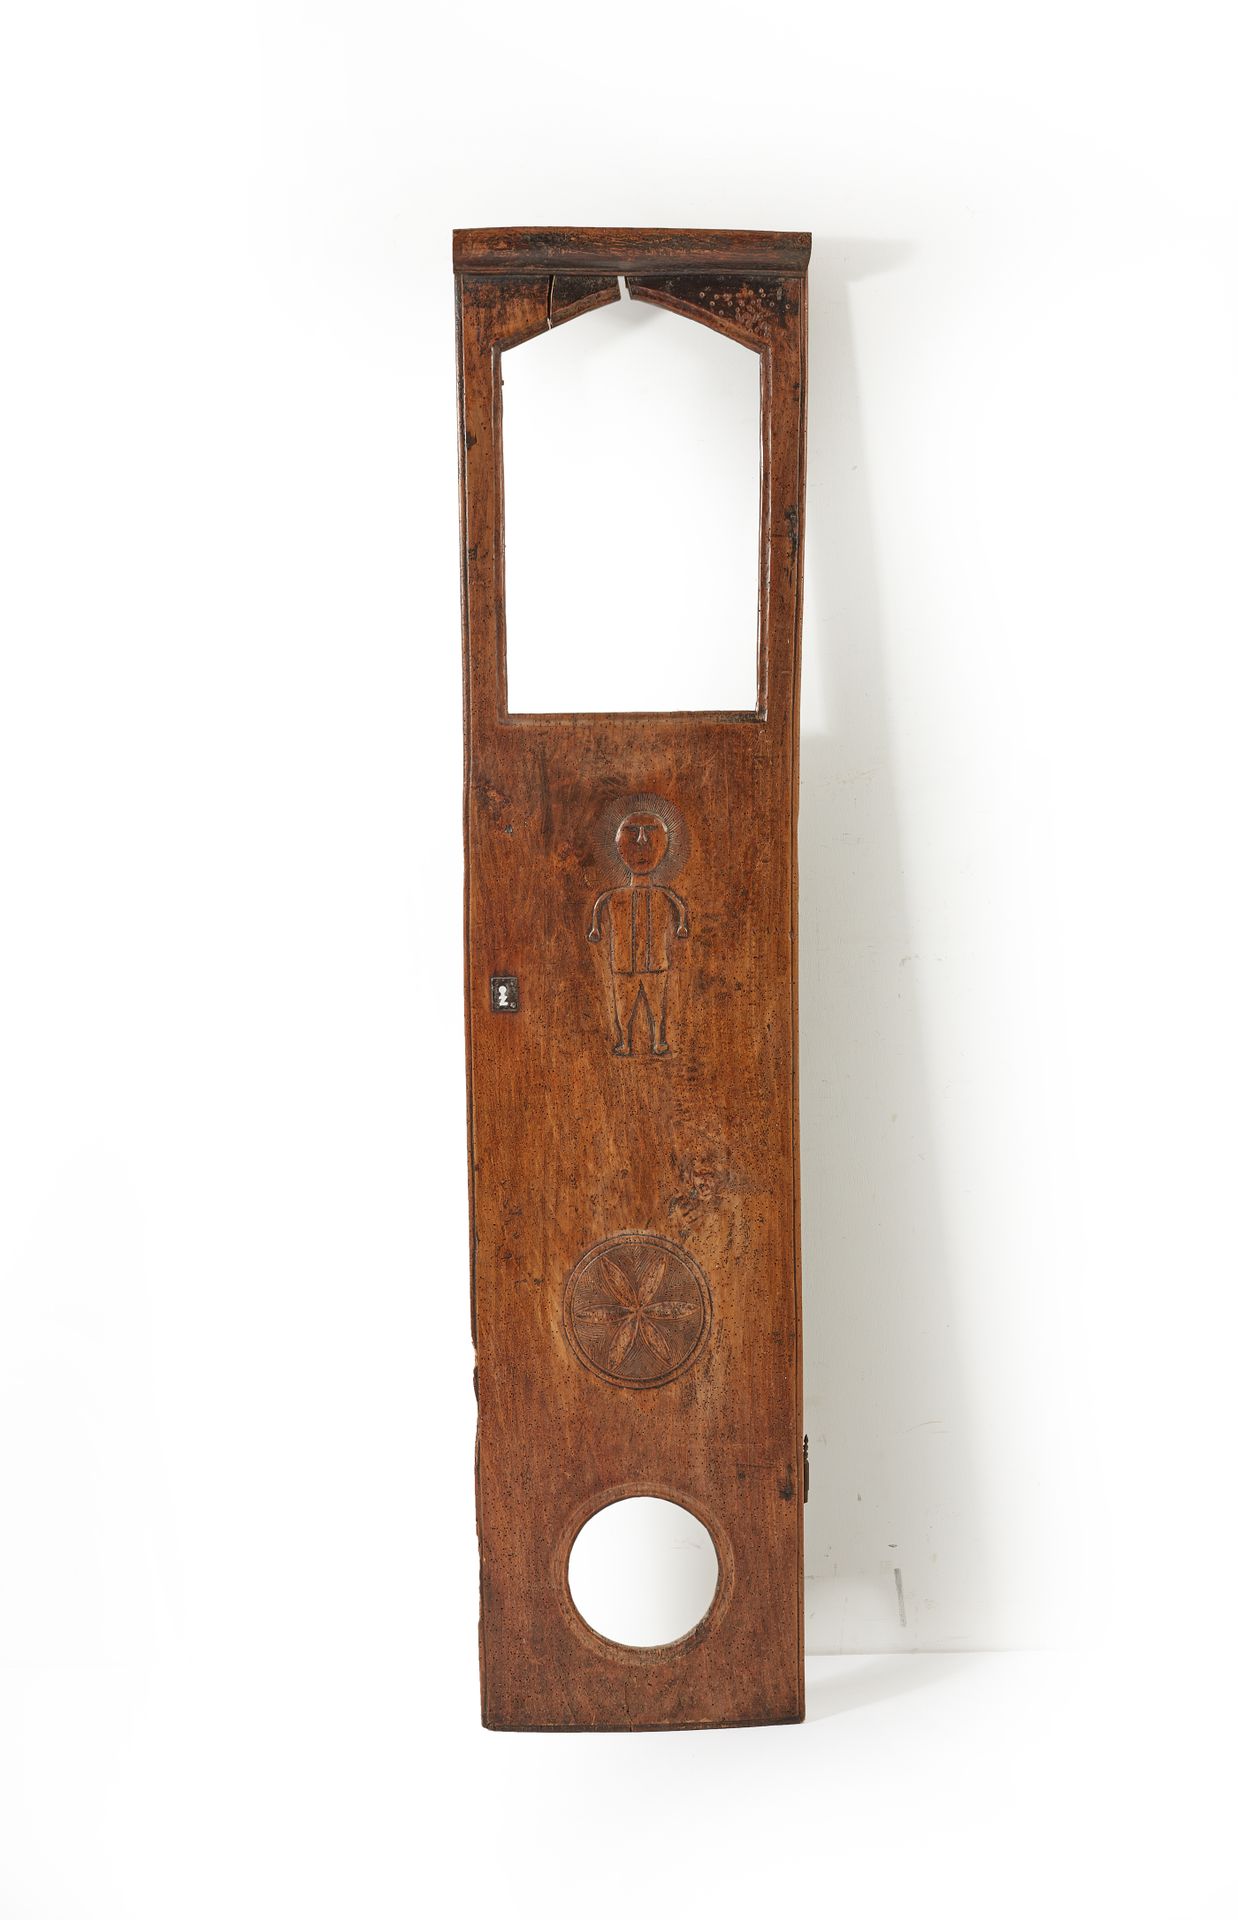 Null 木质的时钟盒门上雕刻着一个人物和一个玫瑰花窗。

19世纪。

高度145 - 宽度32厘米